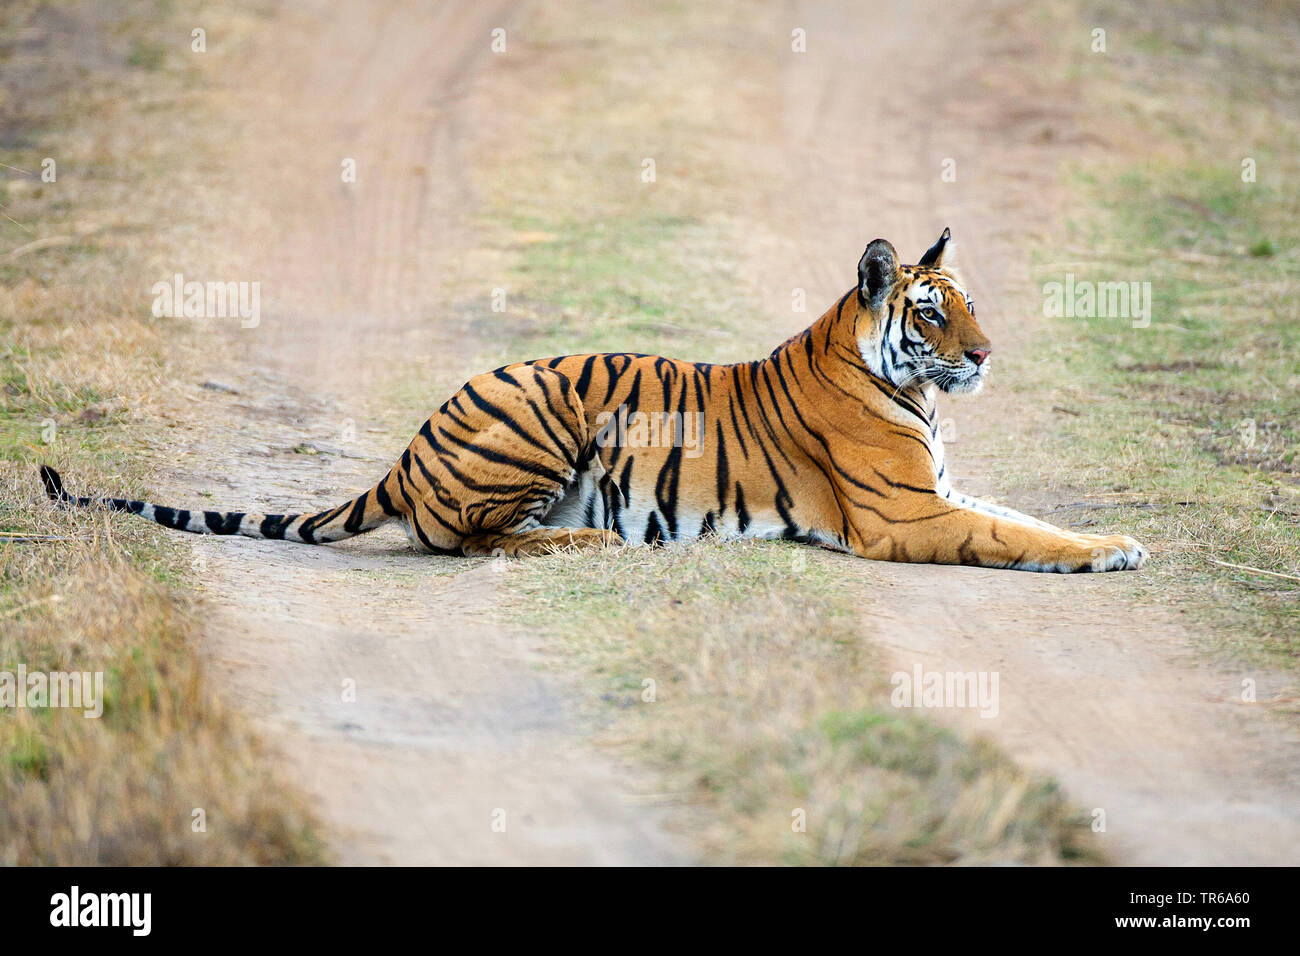 Bengal Tiger (Panthera tigris tigris), tigerin Mutschili liegend auf einer unbefestigten Straße, Seitenansicht, Indien, Ranthambore Nationalpark, Radjasthan Stockfoto